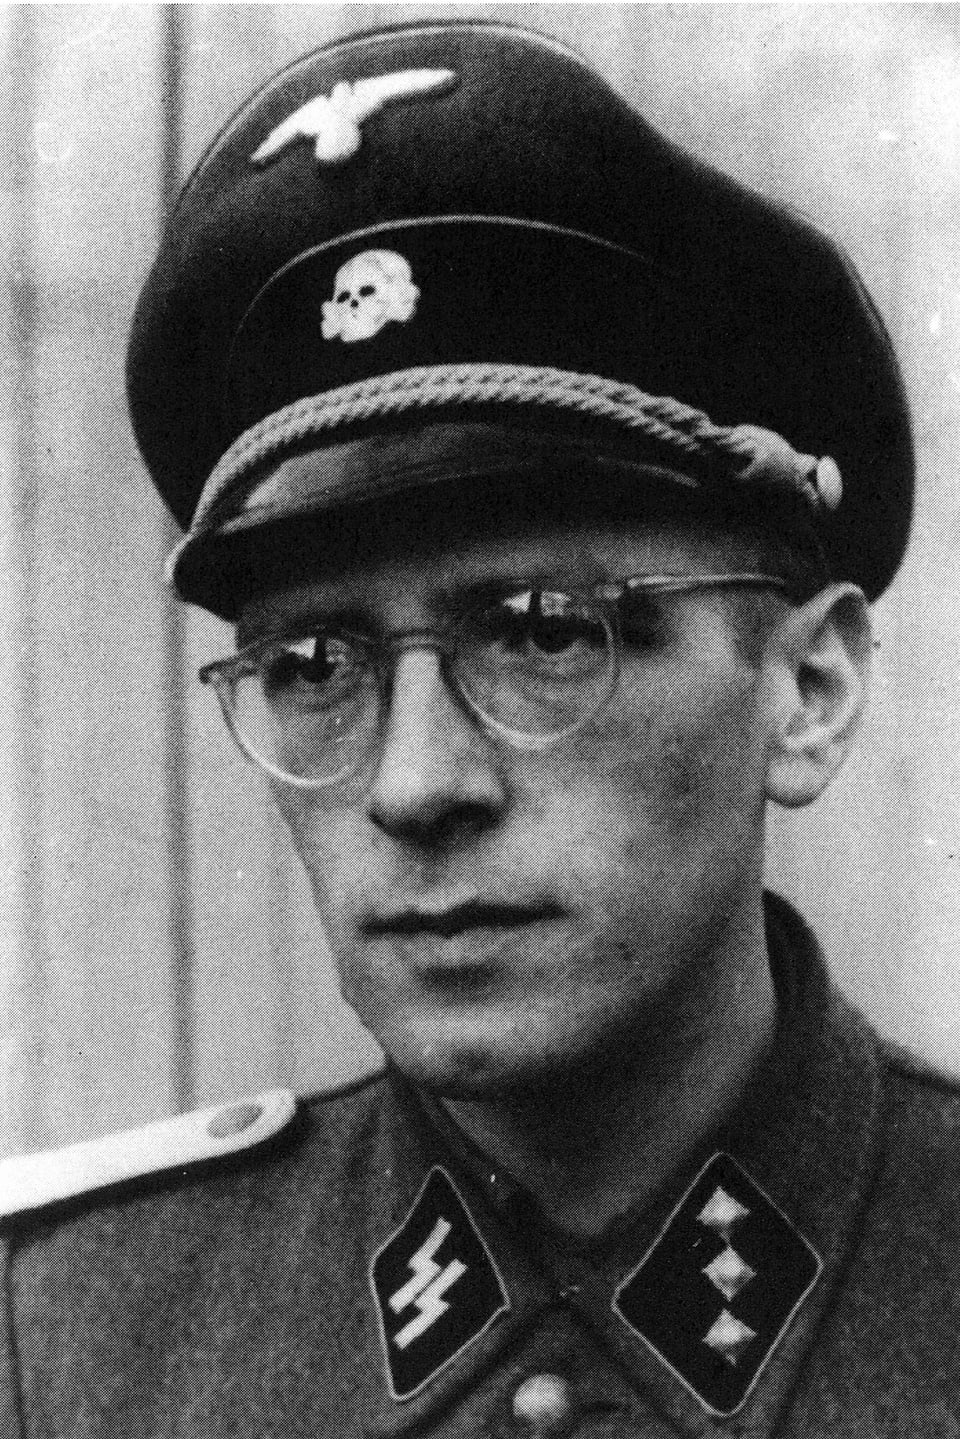 Schwarzweissfoto: Ein Mann mit Brille in Uniform: Am Kragen sind die Runen der SS zu sehen, am Hut das Totenkopf-Symbol.